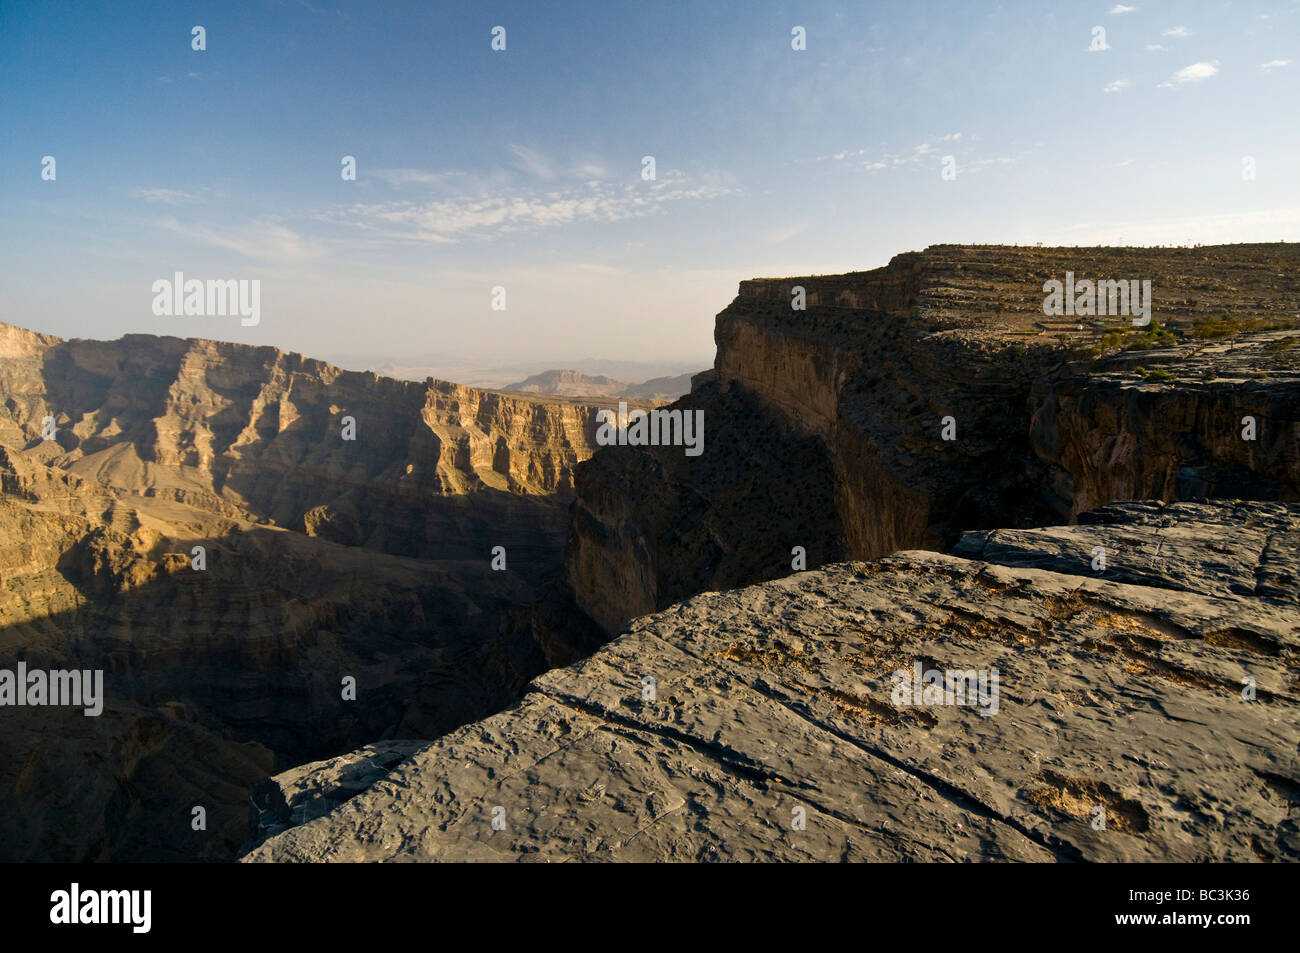 Jabal Shams Canyon in Al Jabal Al Akhdar area Oman Stock Photo